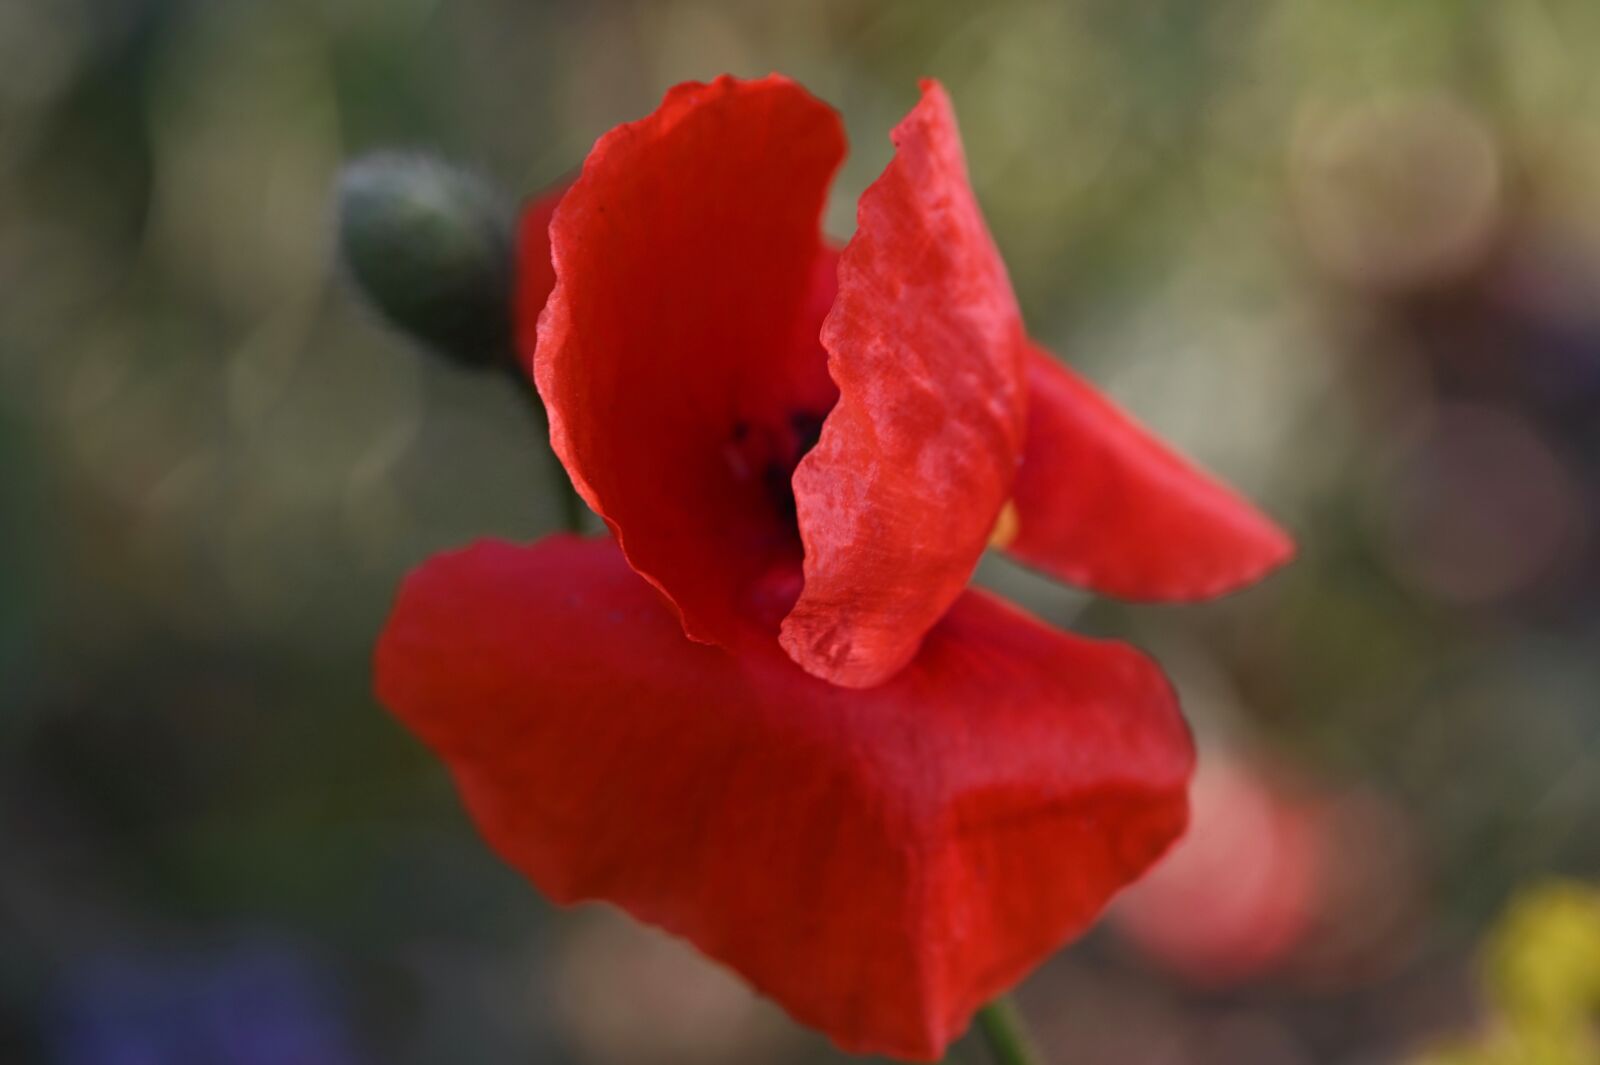 Nikon Z6 sample photo. Poppy, poppy flower, klatschmohn photography